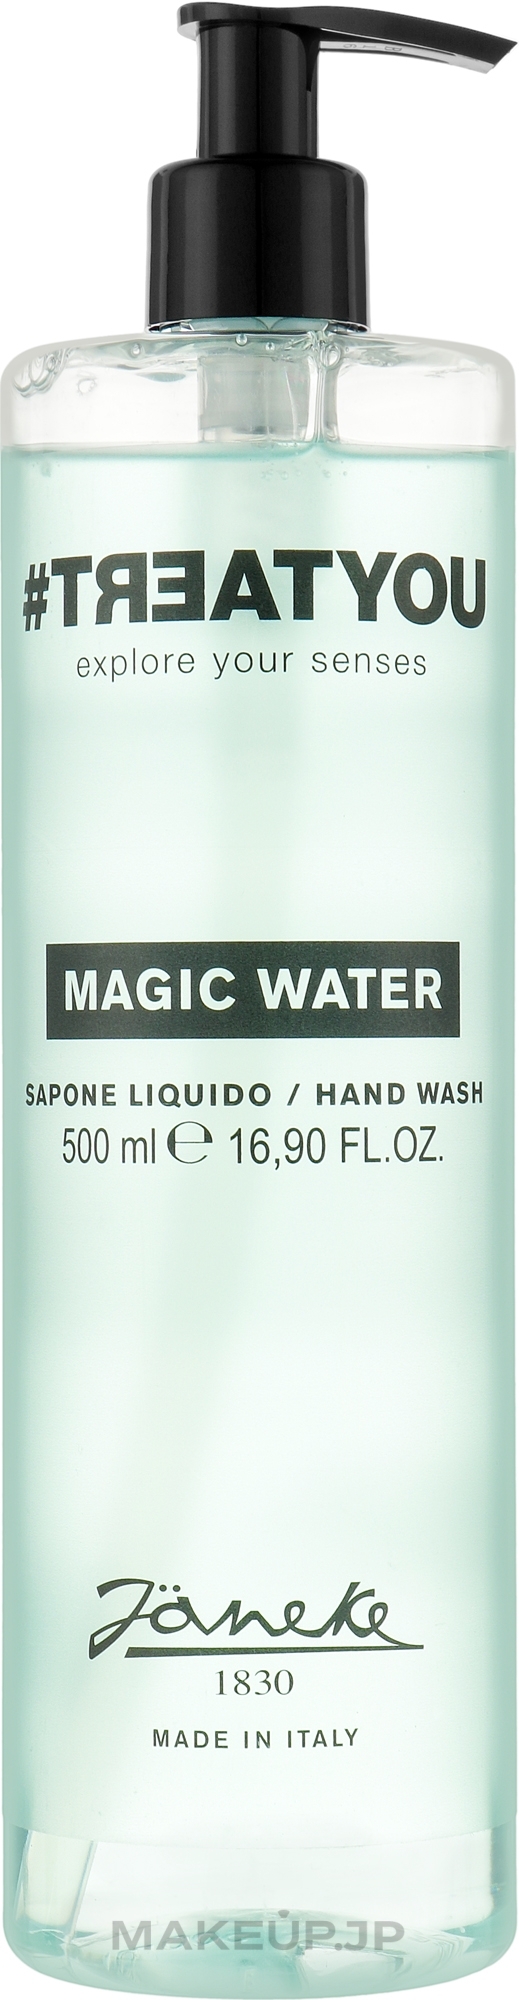 Liquid Hand Soap - Janeke #Treatyou Magic Water Hand Wash — photo 500 ml